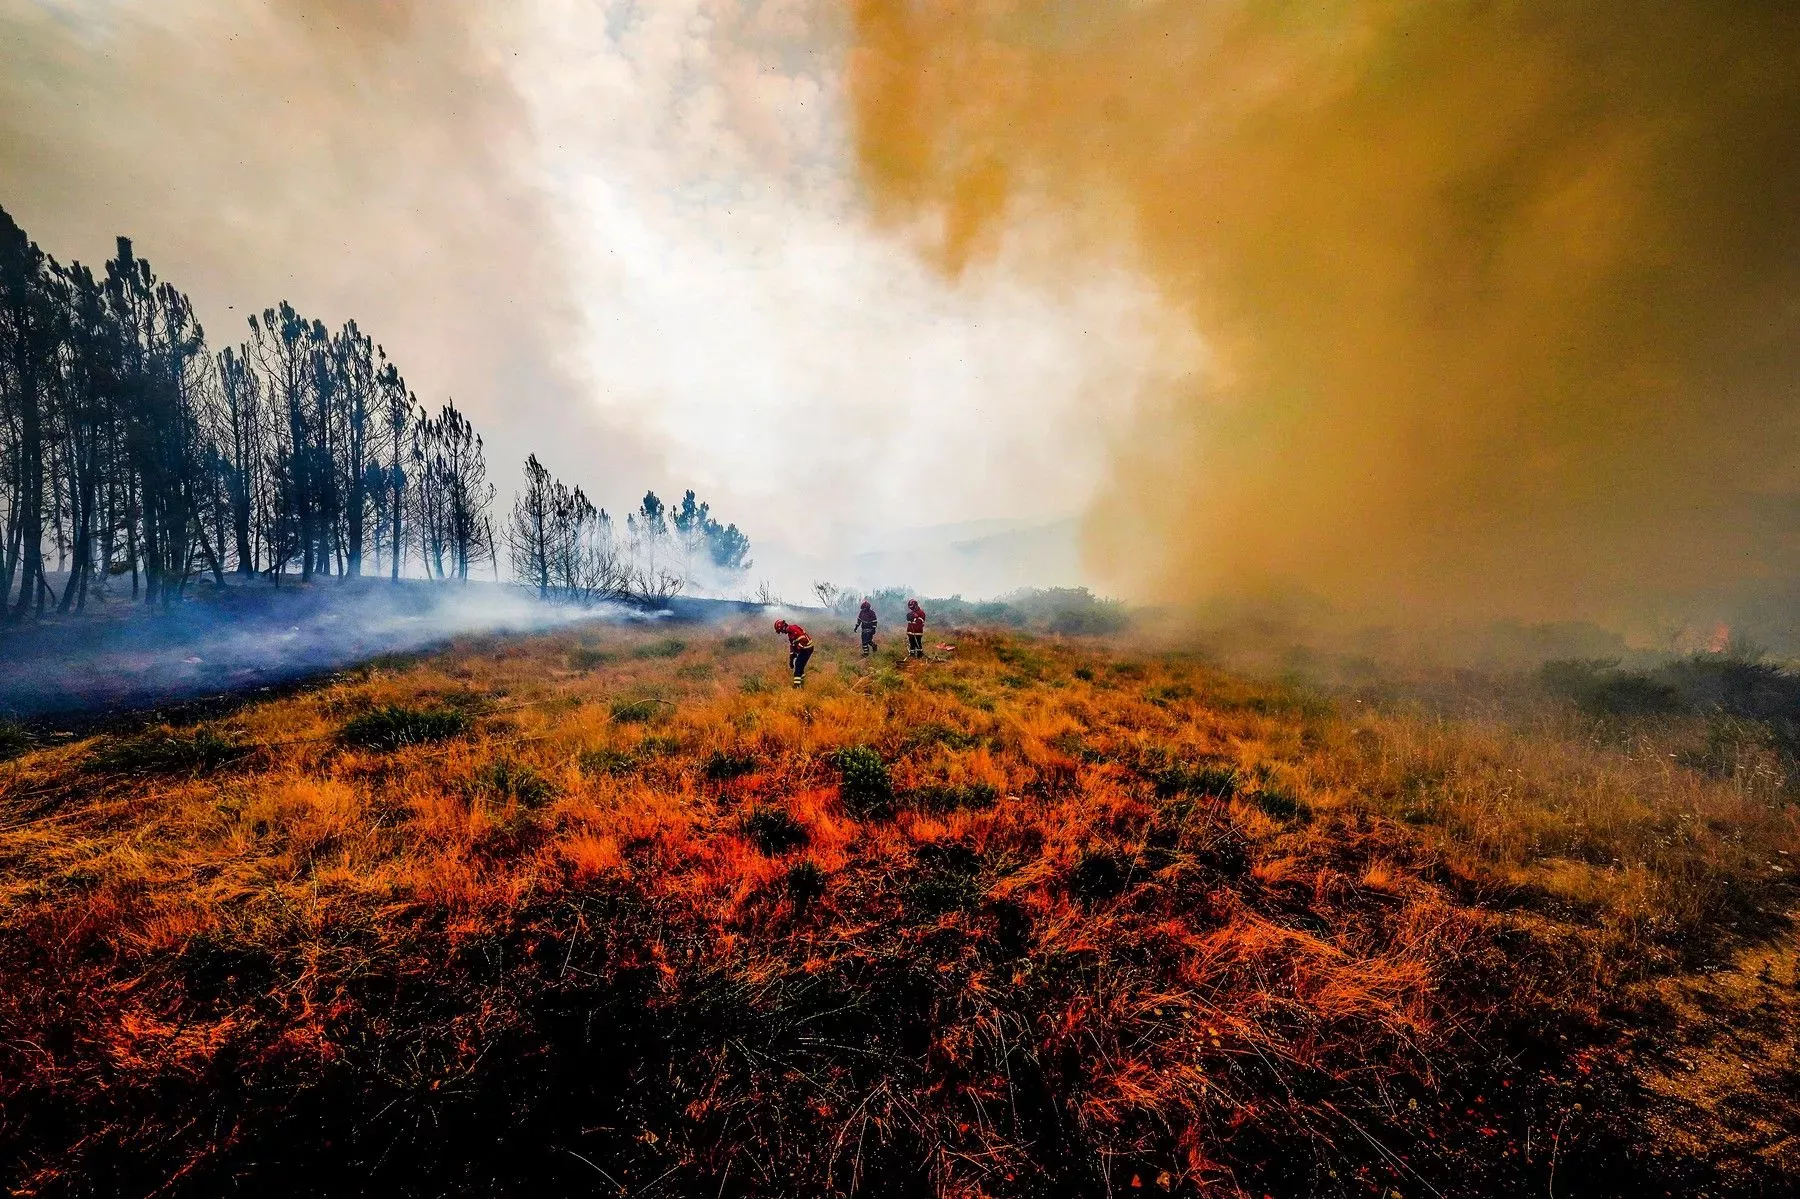 Následek lesního požáru v Portugalsku